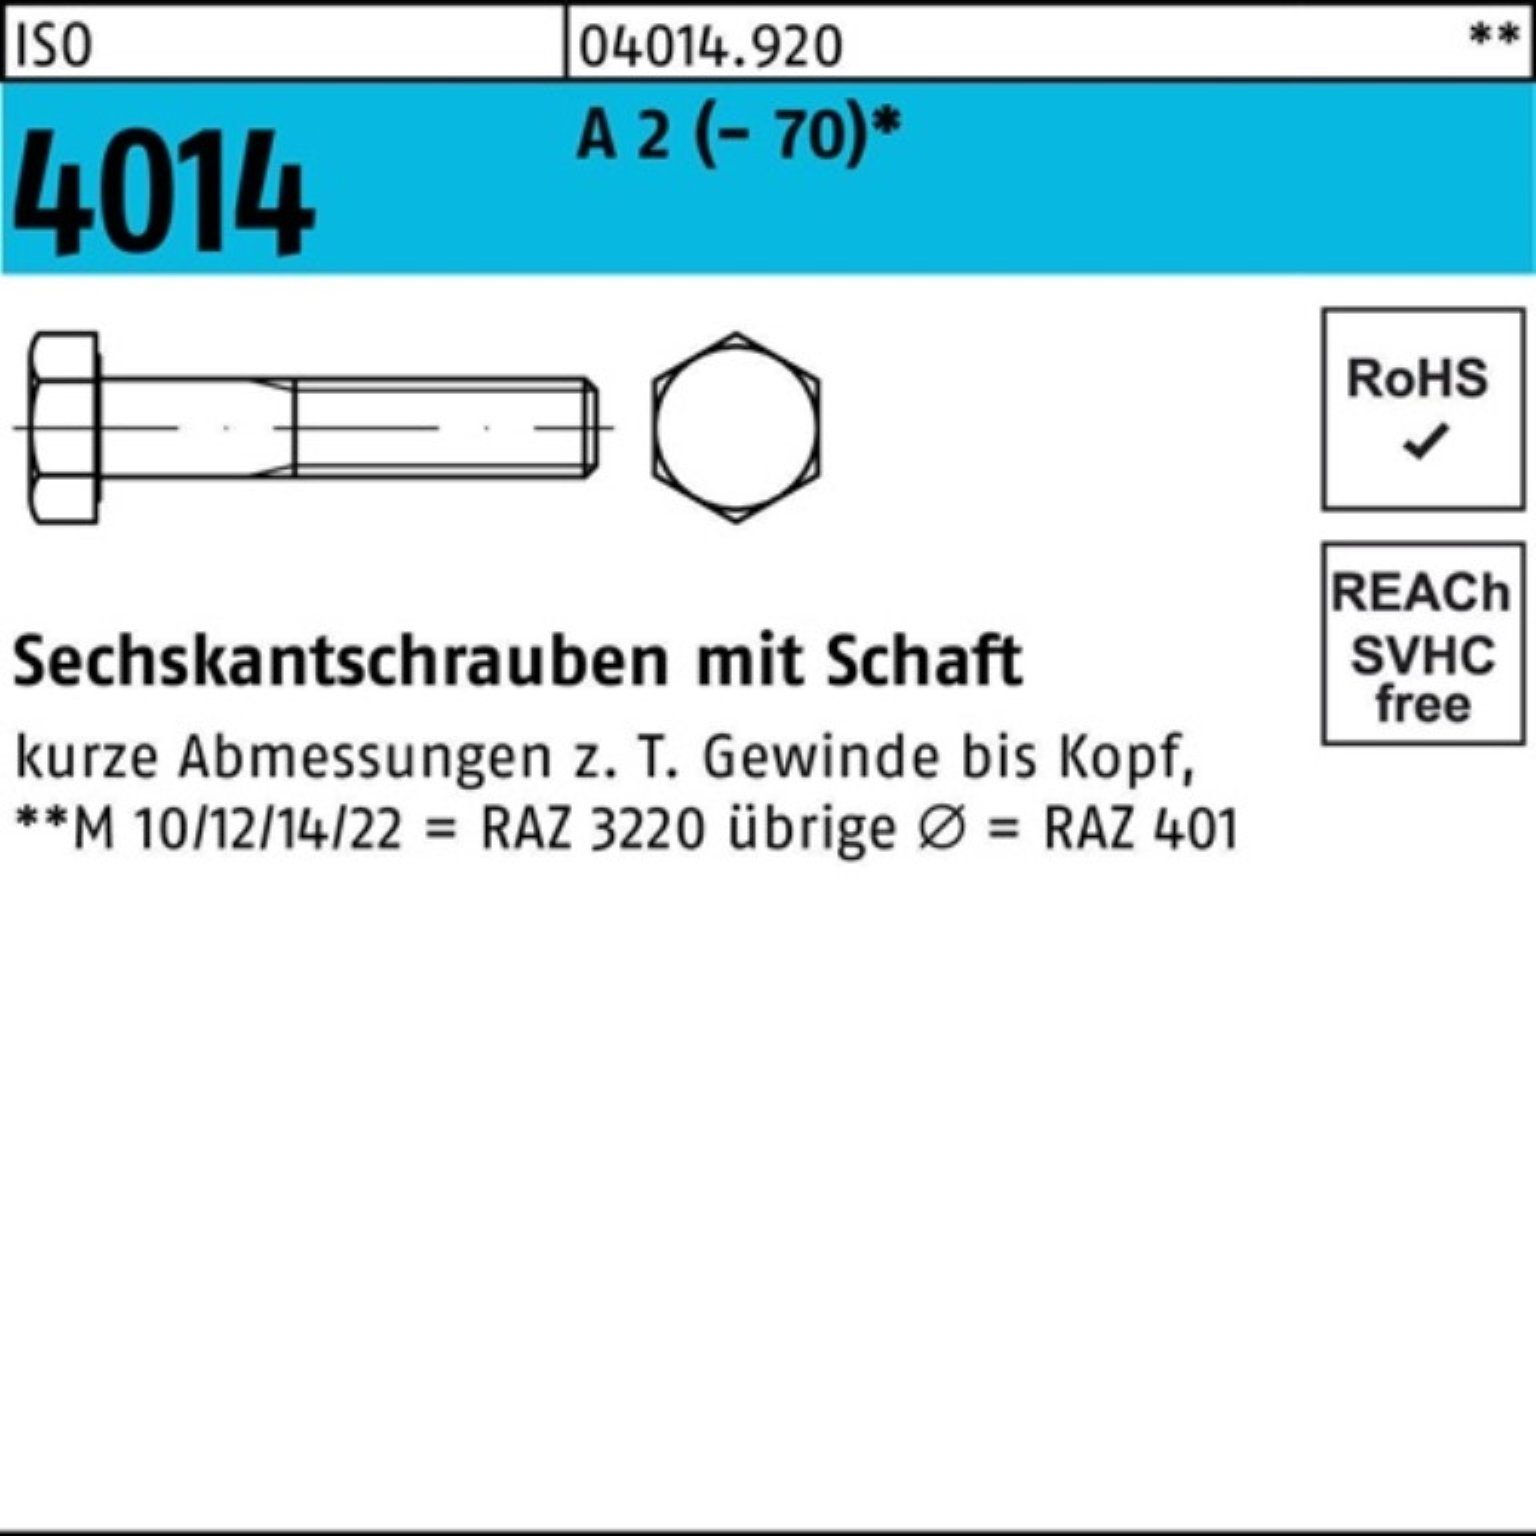 Bufab Sechskantschraube 100er Pack Sechskantschraube ISO 4014 Schaft M16x 170 A 2 (70) 1 St